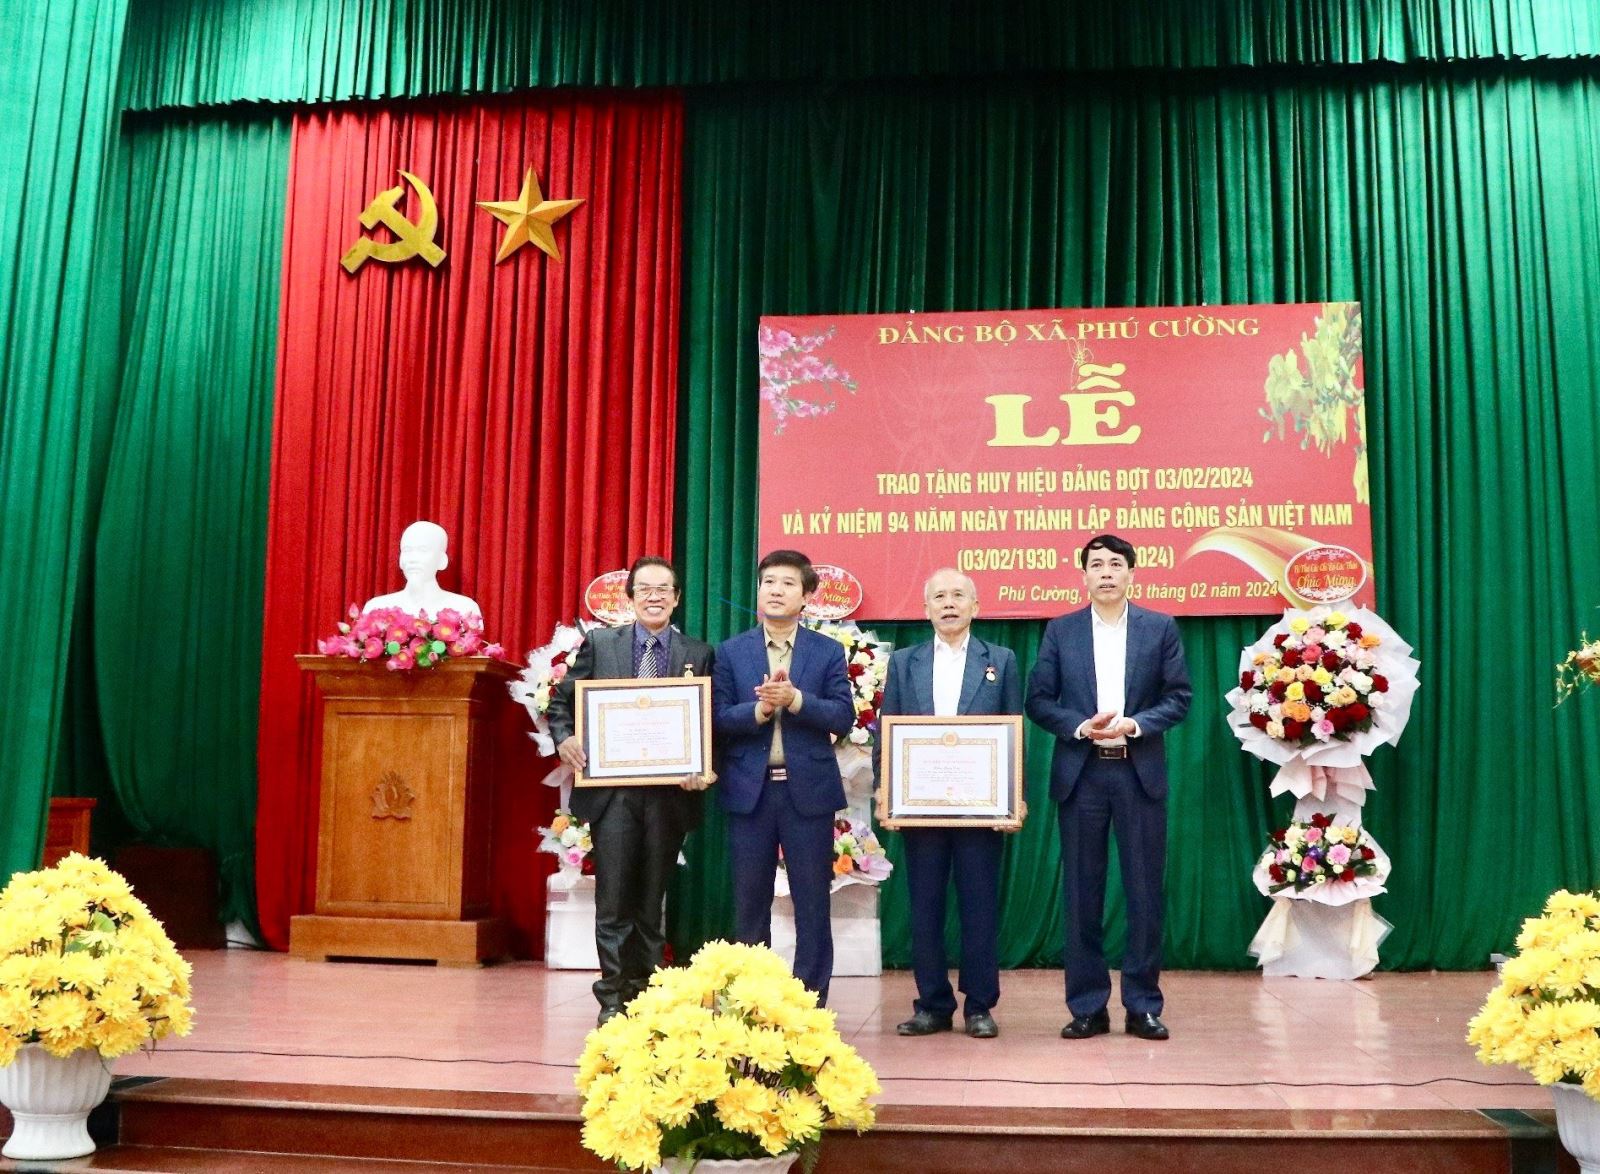 Đảng ủy xã Phú Cường tổ chức kỷ niệm 94 năm ngày thành lập  Đảng cộng sản Việt Nam và trao Huy hiệu Đảng đợt 3/2